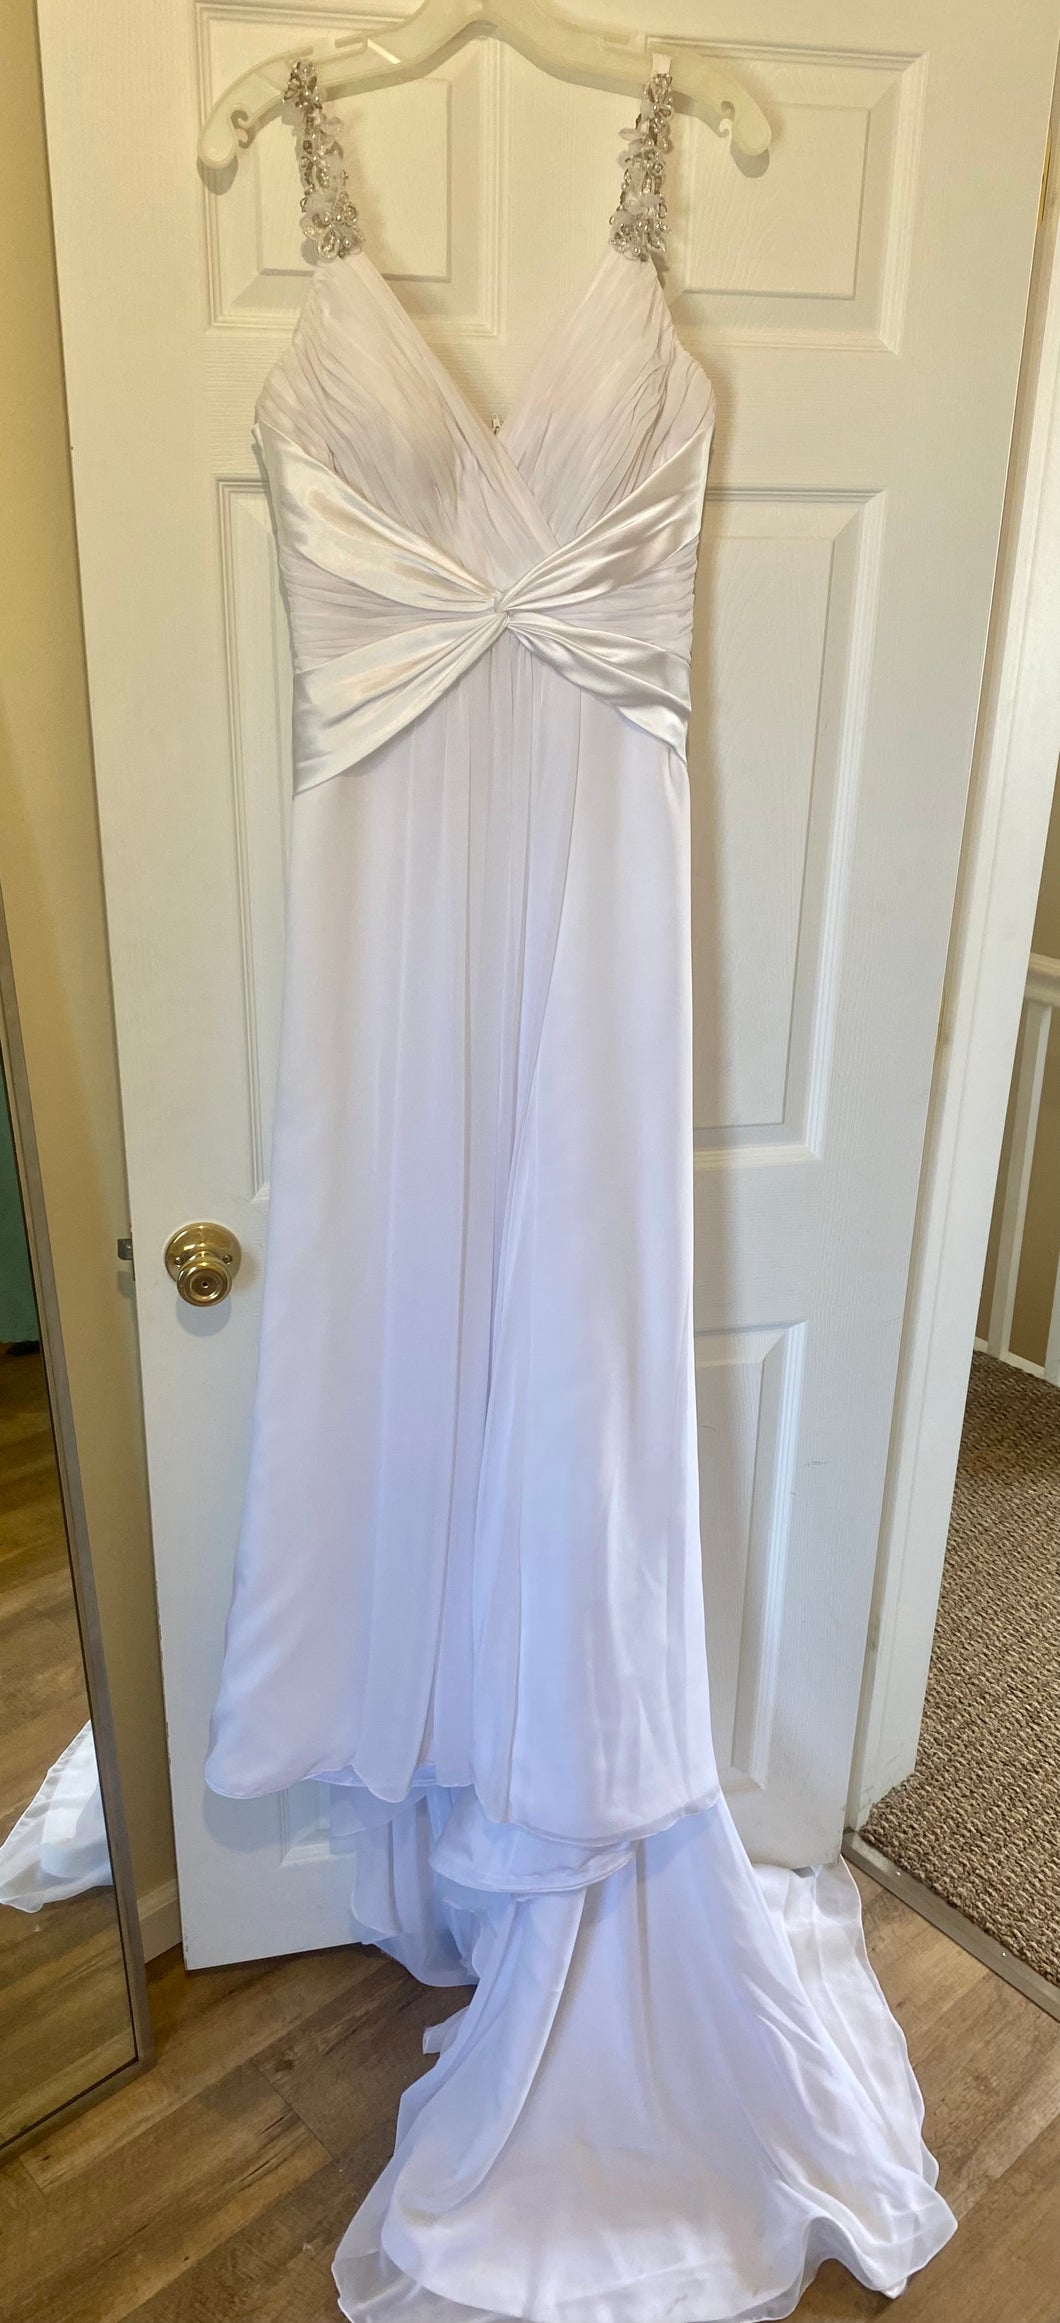 CLAP100-B White Chiffon Gown. Size 10